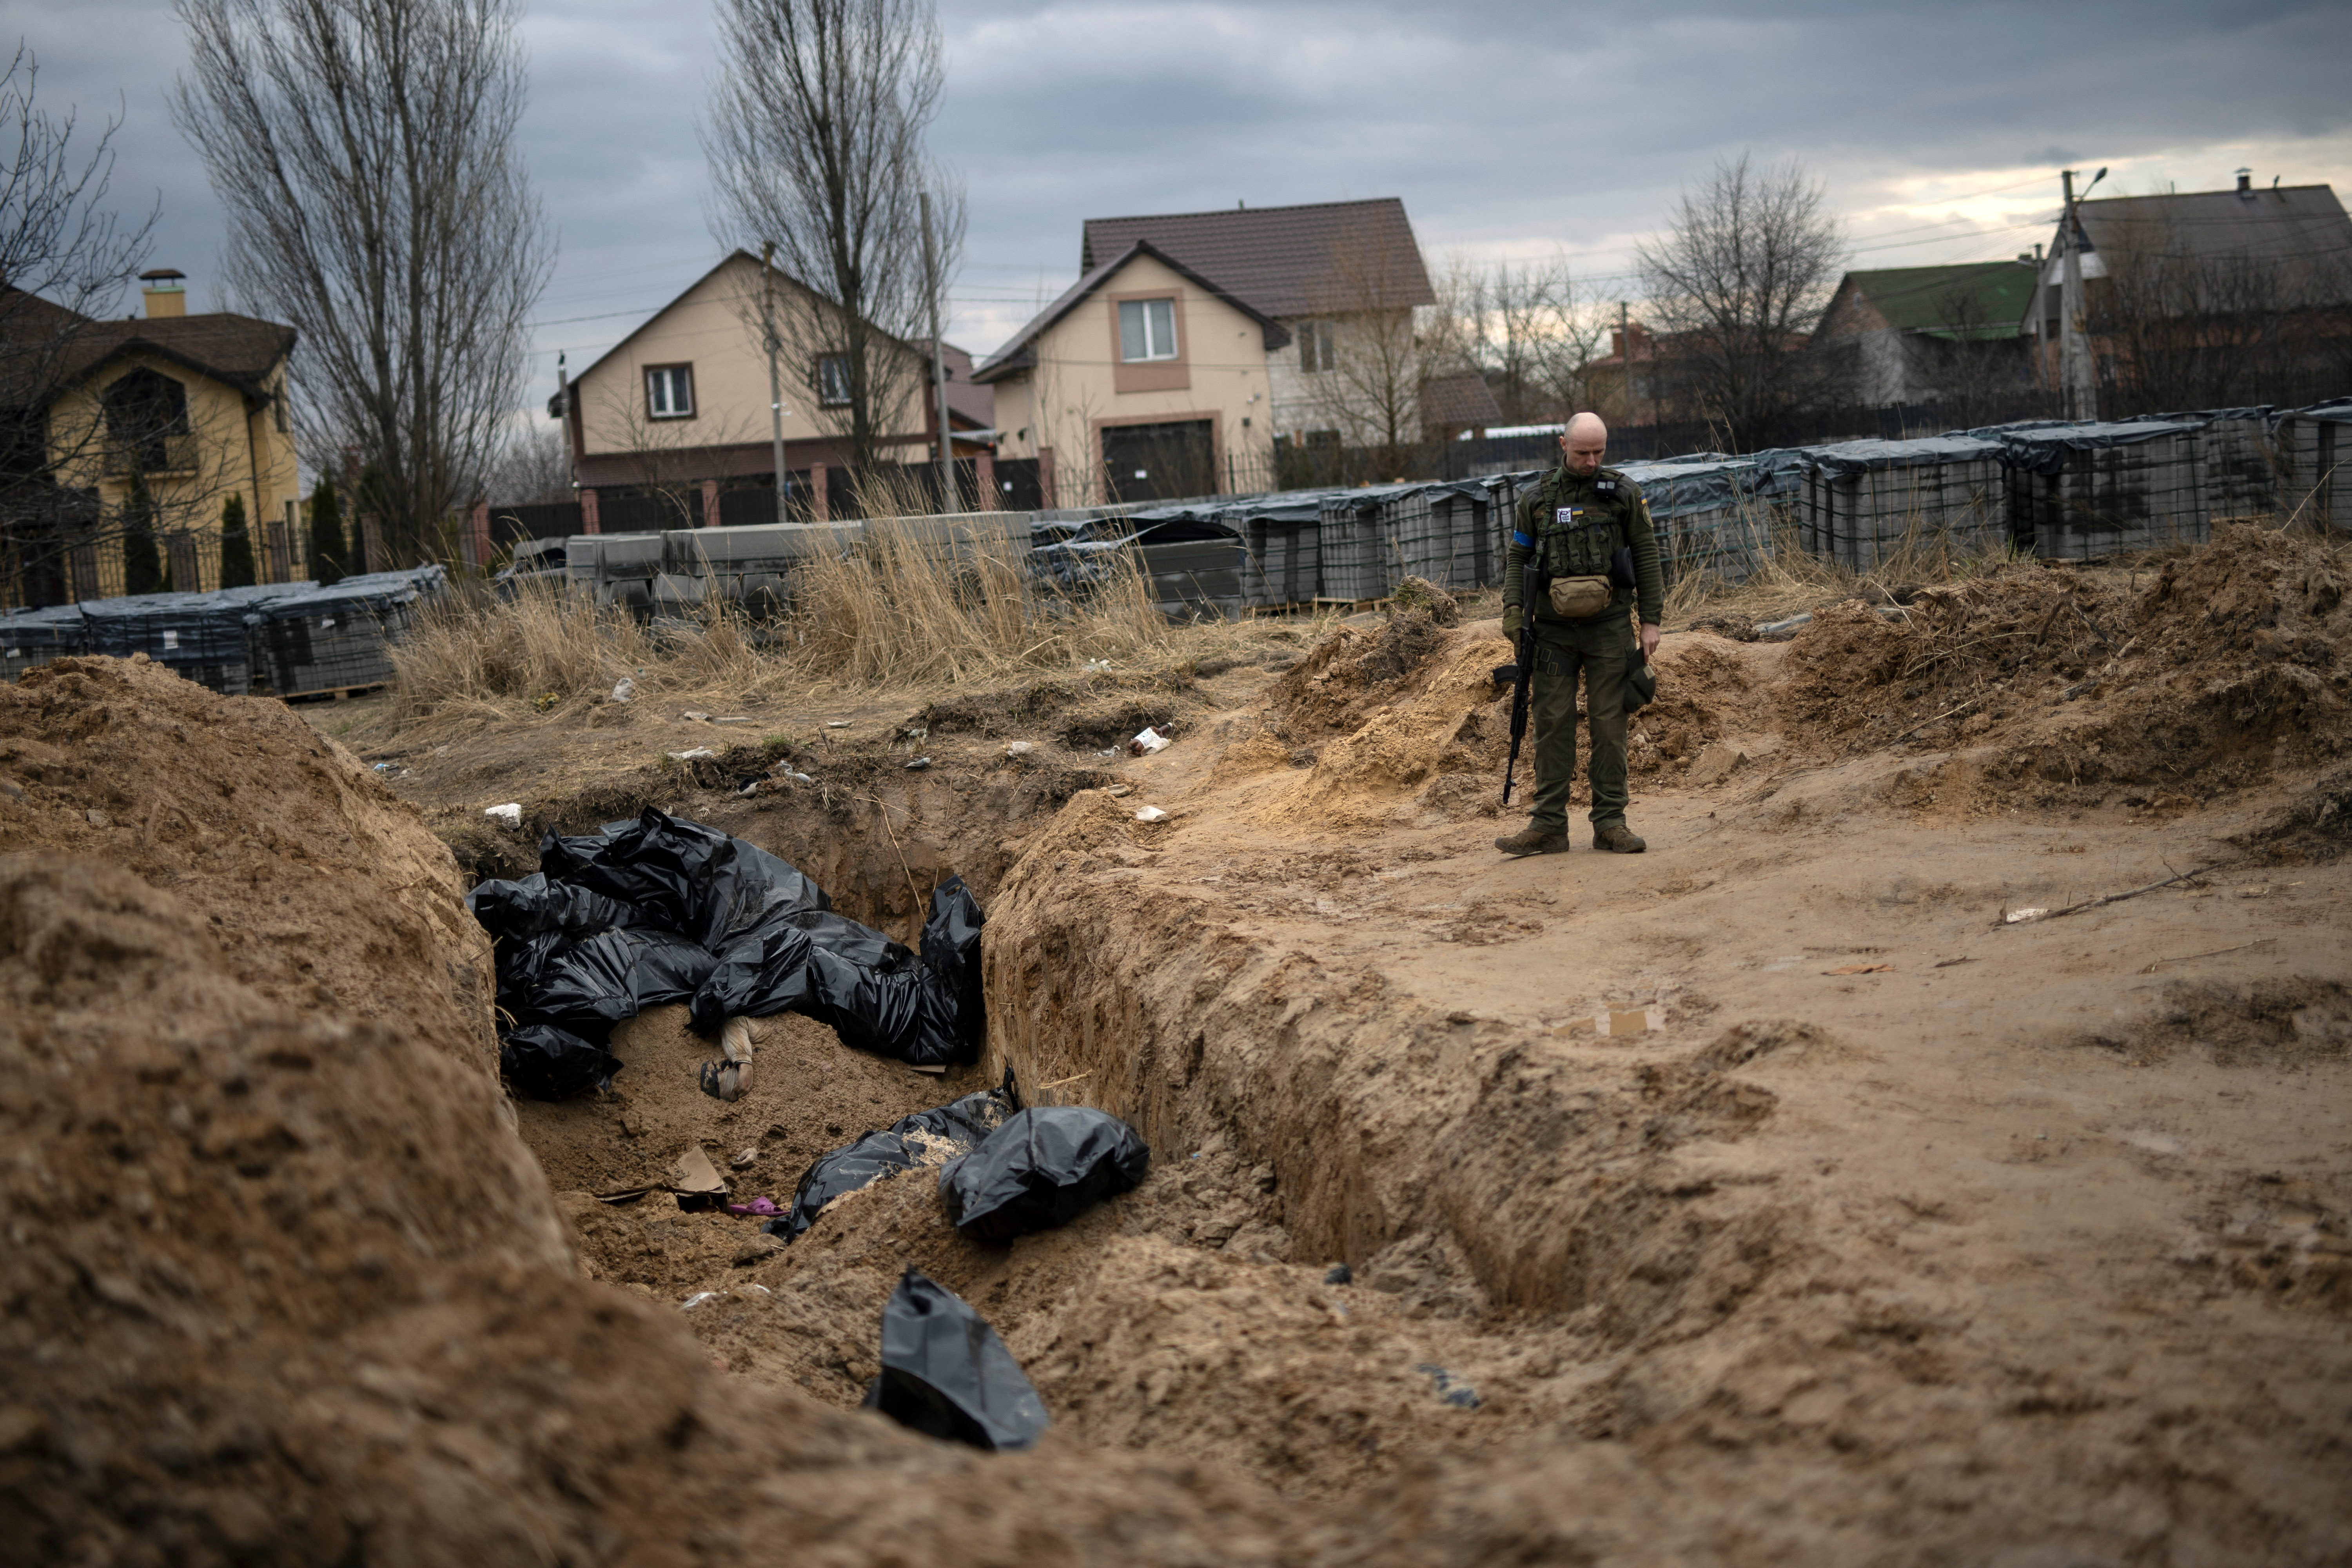 El presidente ucraniano, Volodomir Zelensky, acusó este jueves a Rusia de “sacar a los muertos de las calles y sótanos del territorio ocupado” para ocultar la evidencia “de los crímenes de guerra"